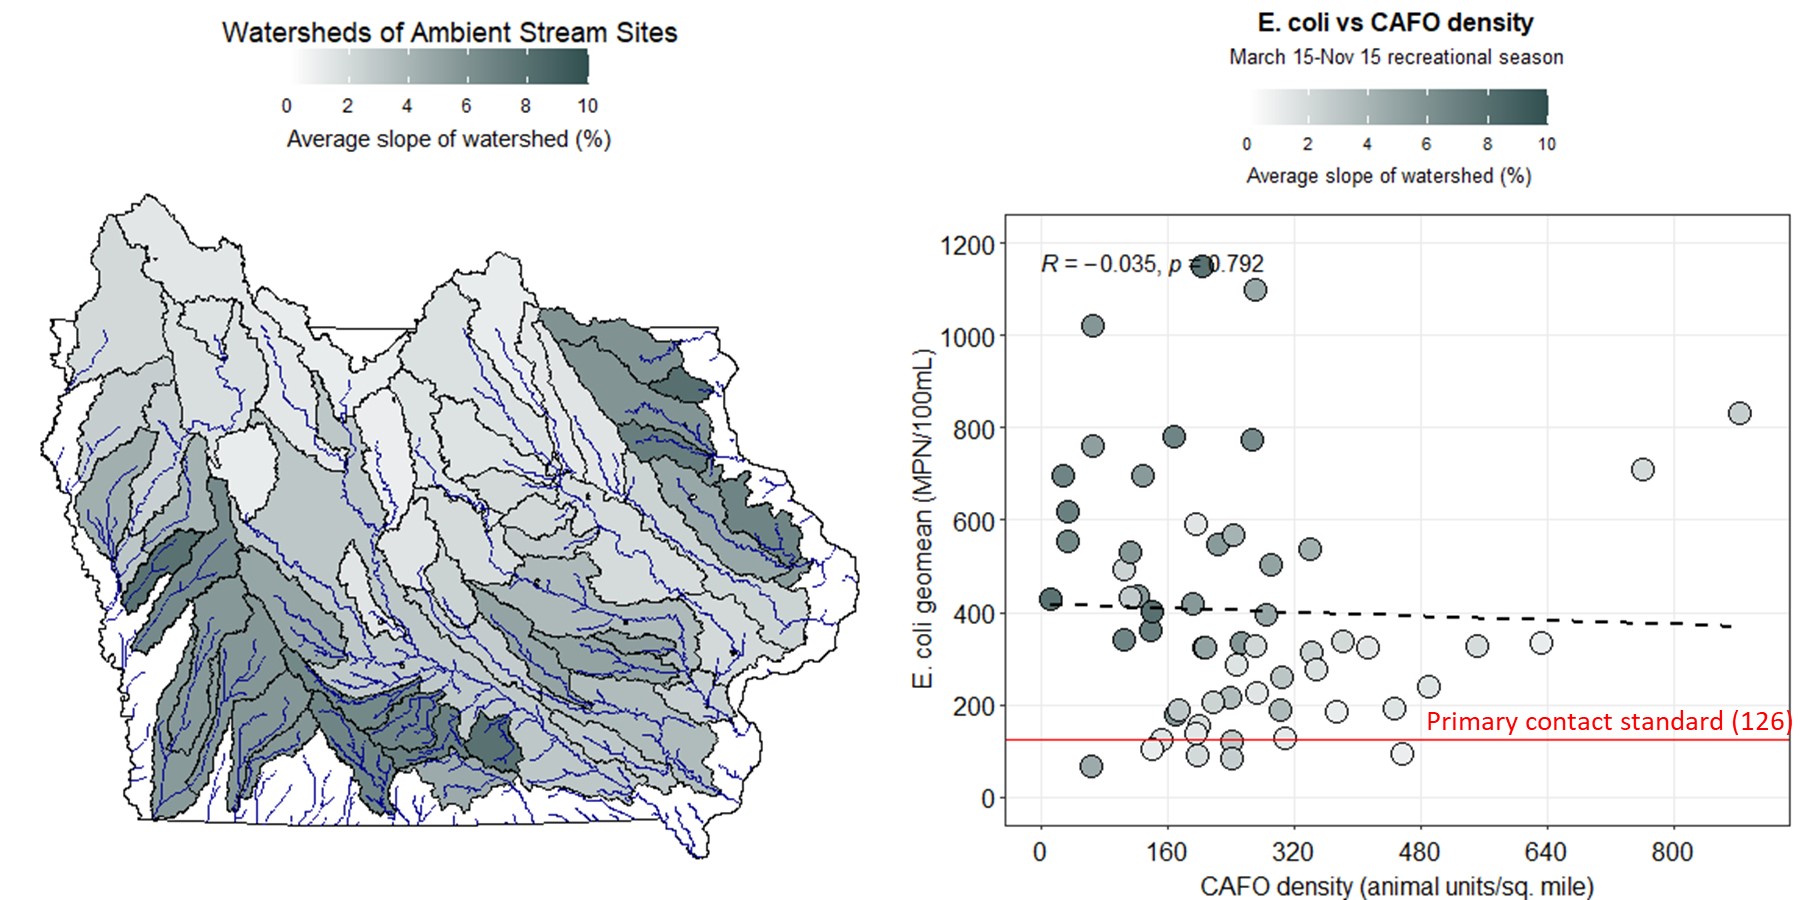 E. coli vs livestock density